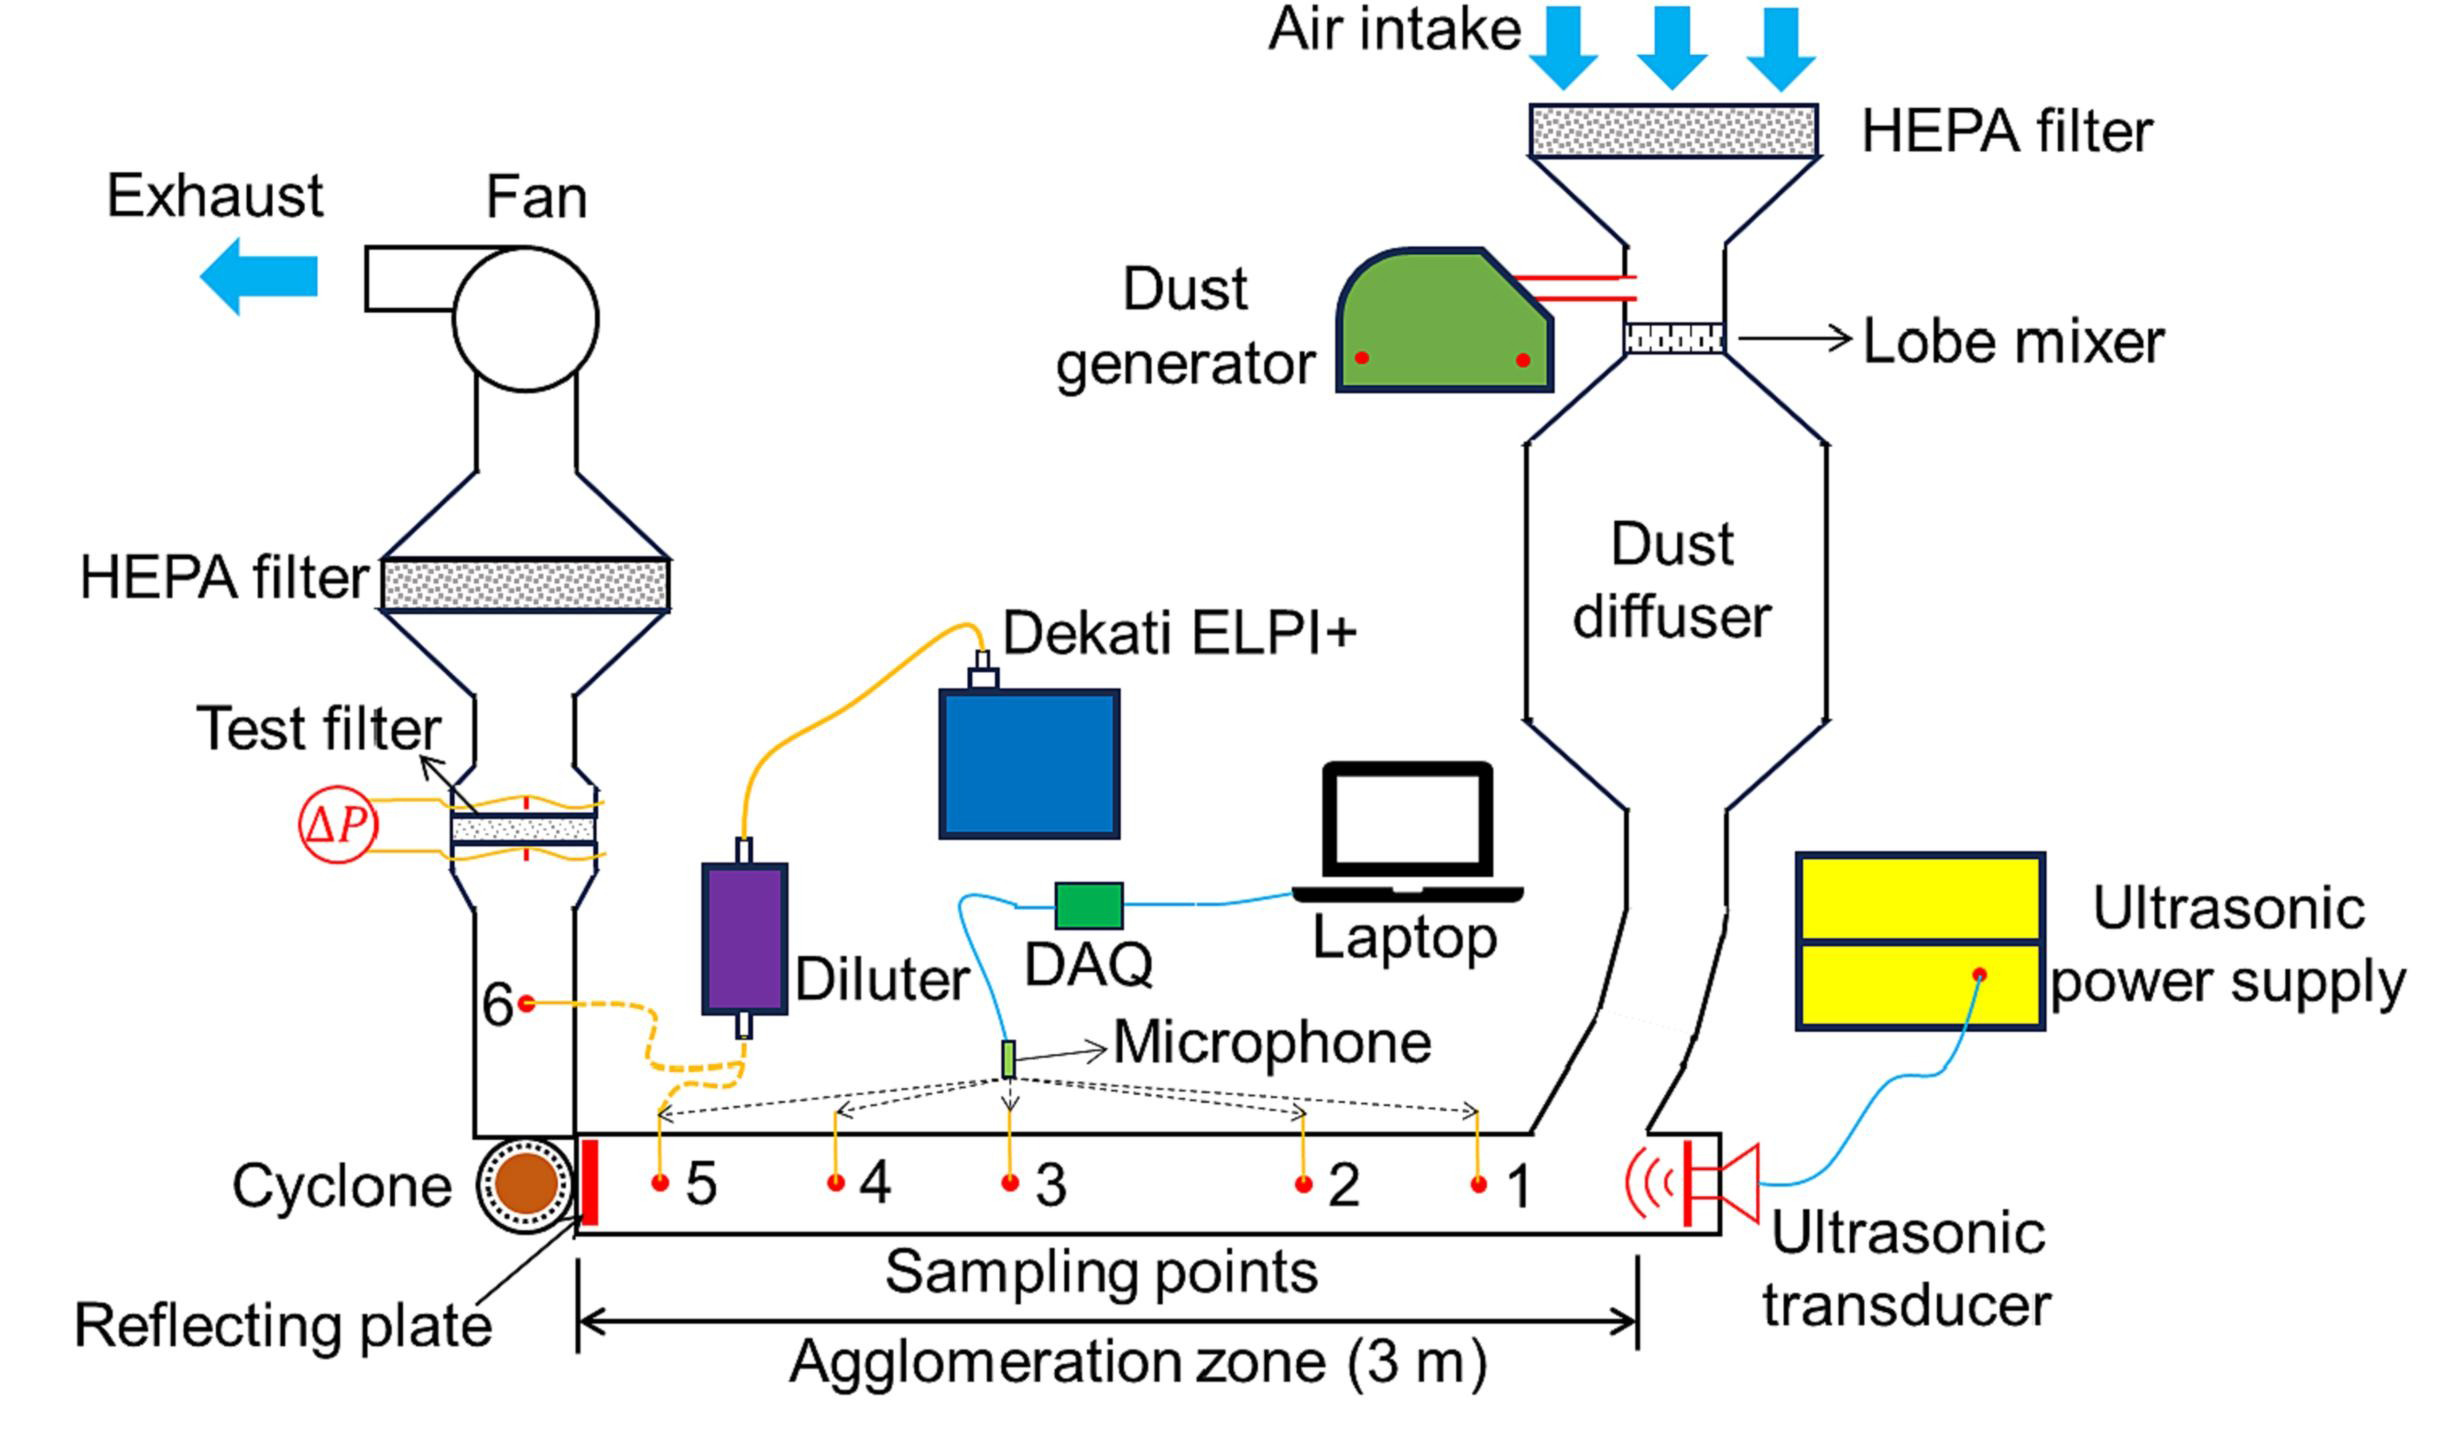 Impacto de aglomeración de aerosol ultrasónico en el filtro de aire